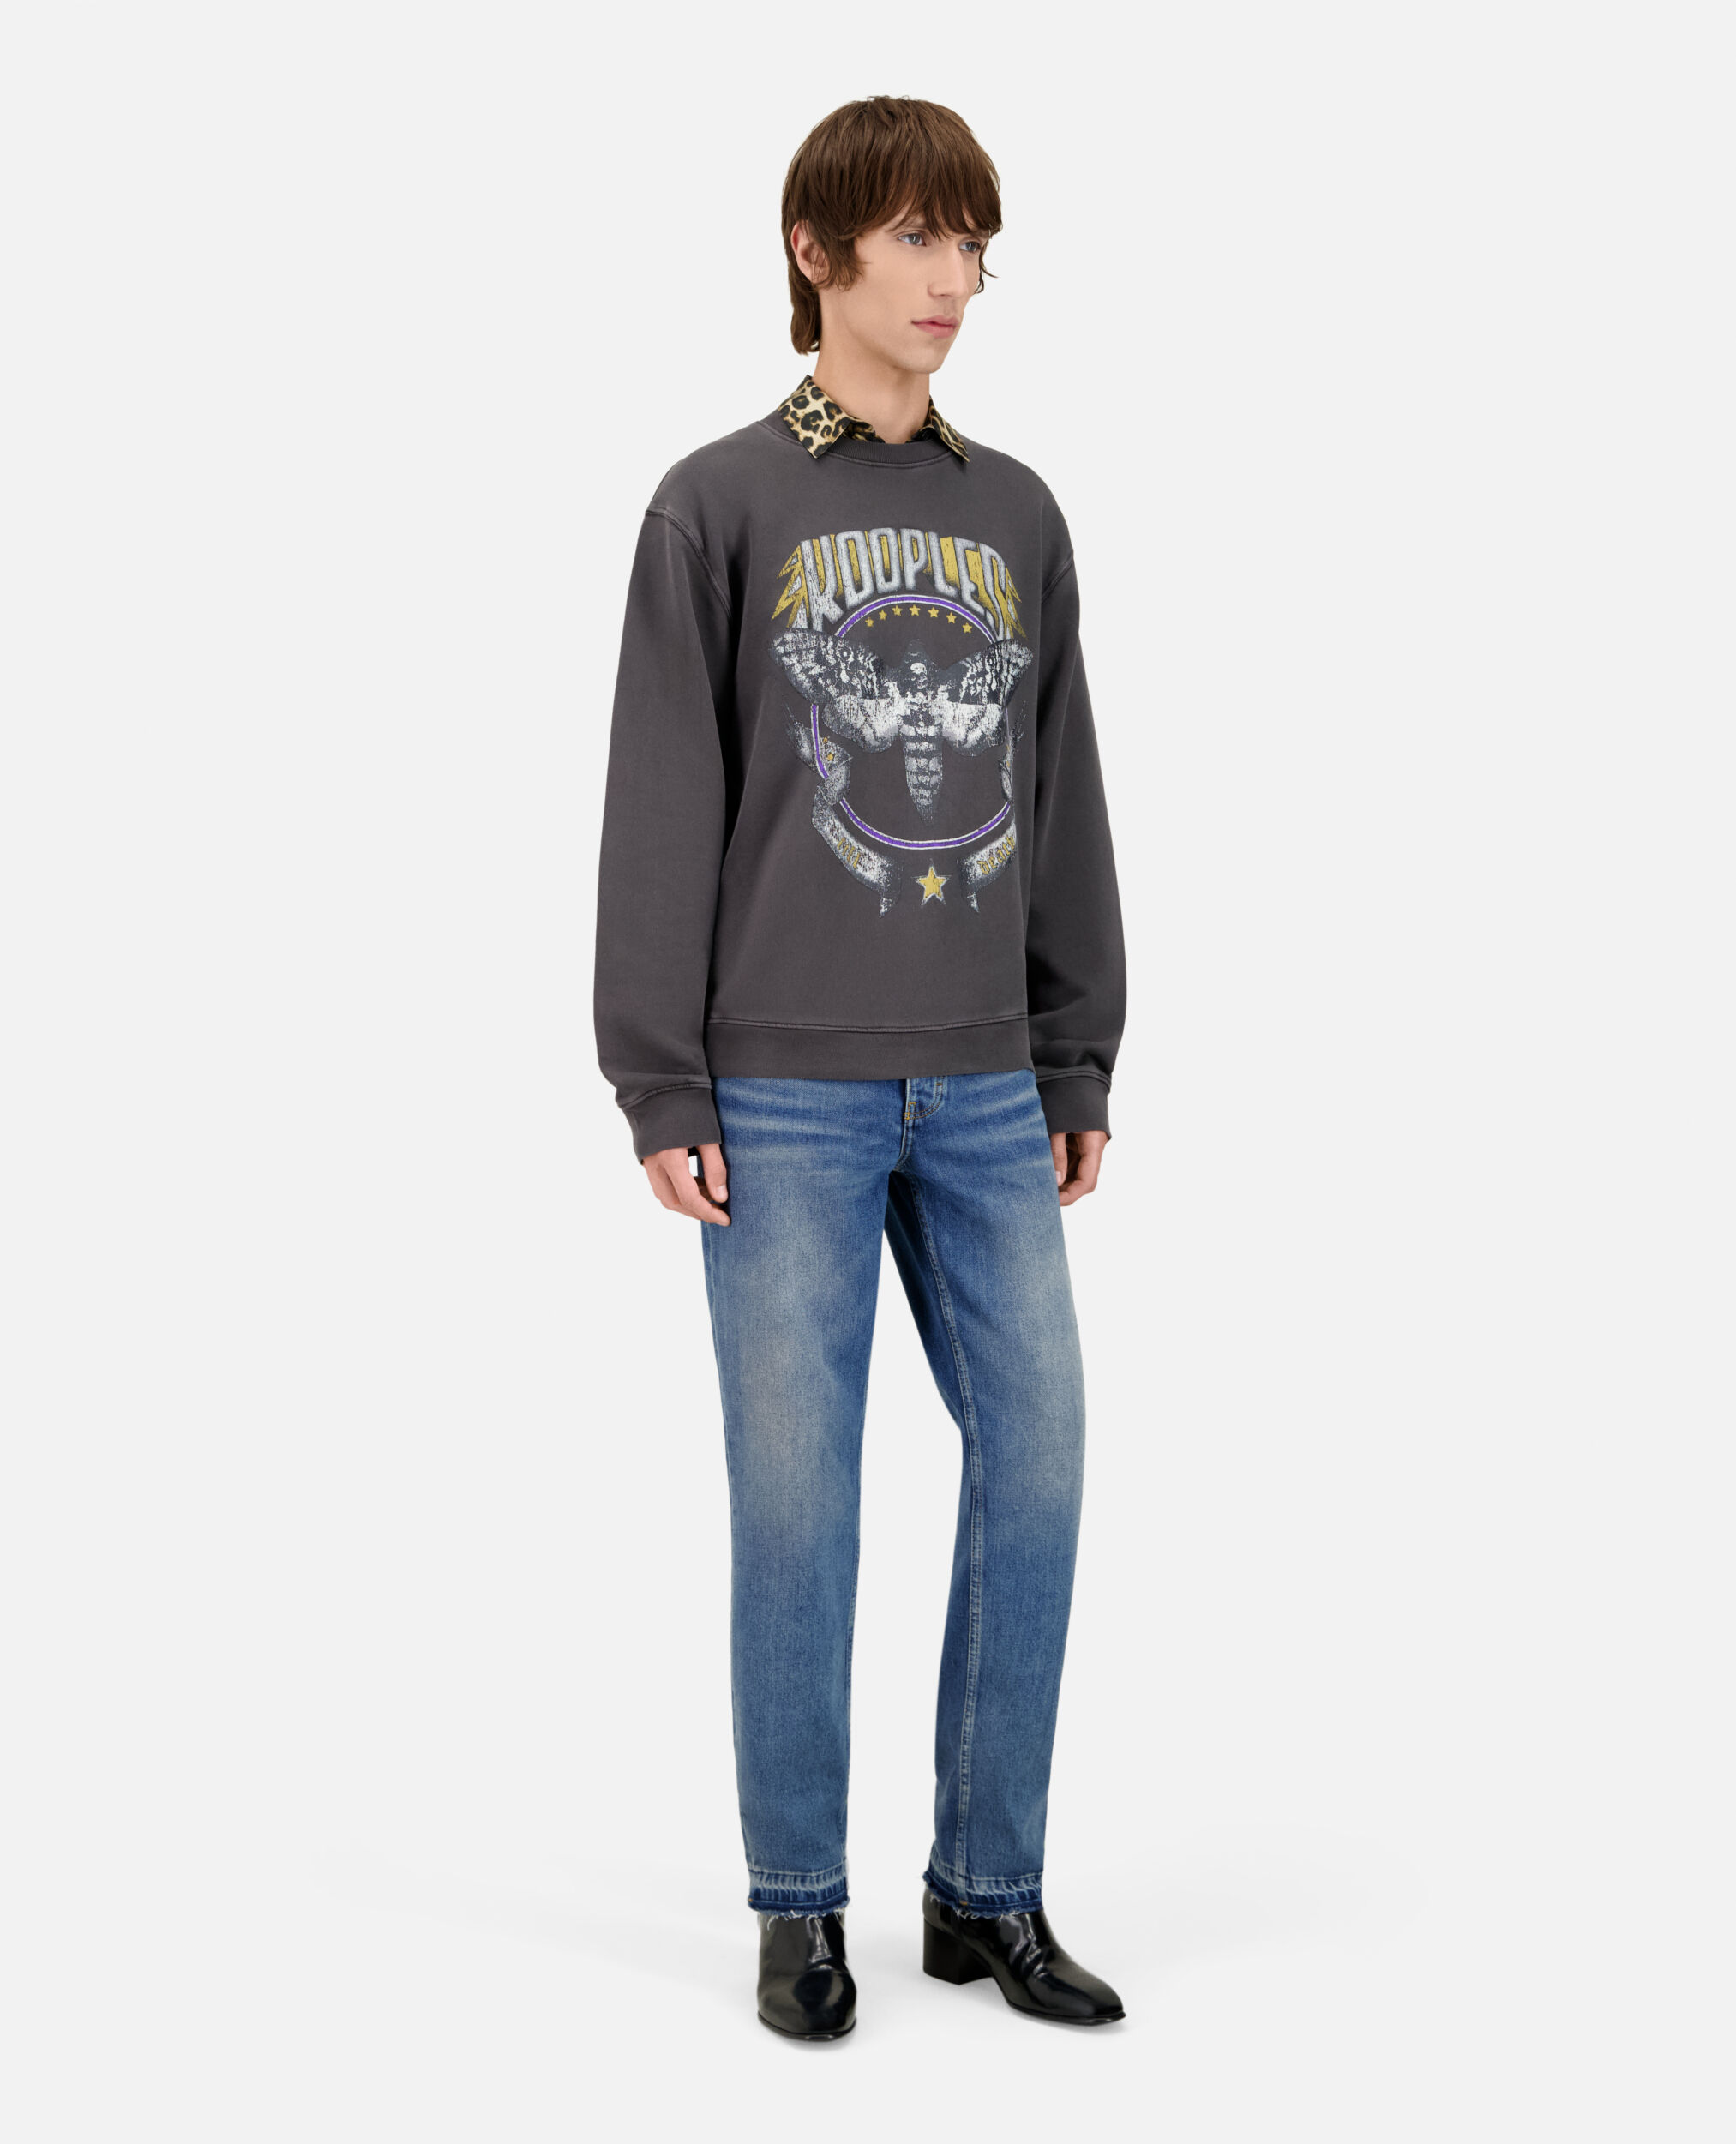 Carbongraues Sweatshirt mit Siebdruck, CARBONE, hi-res image number null